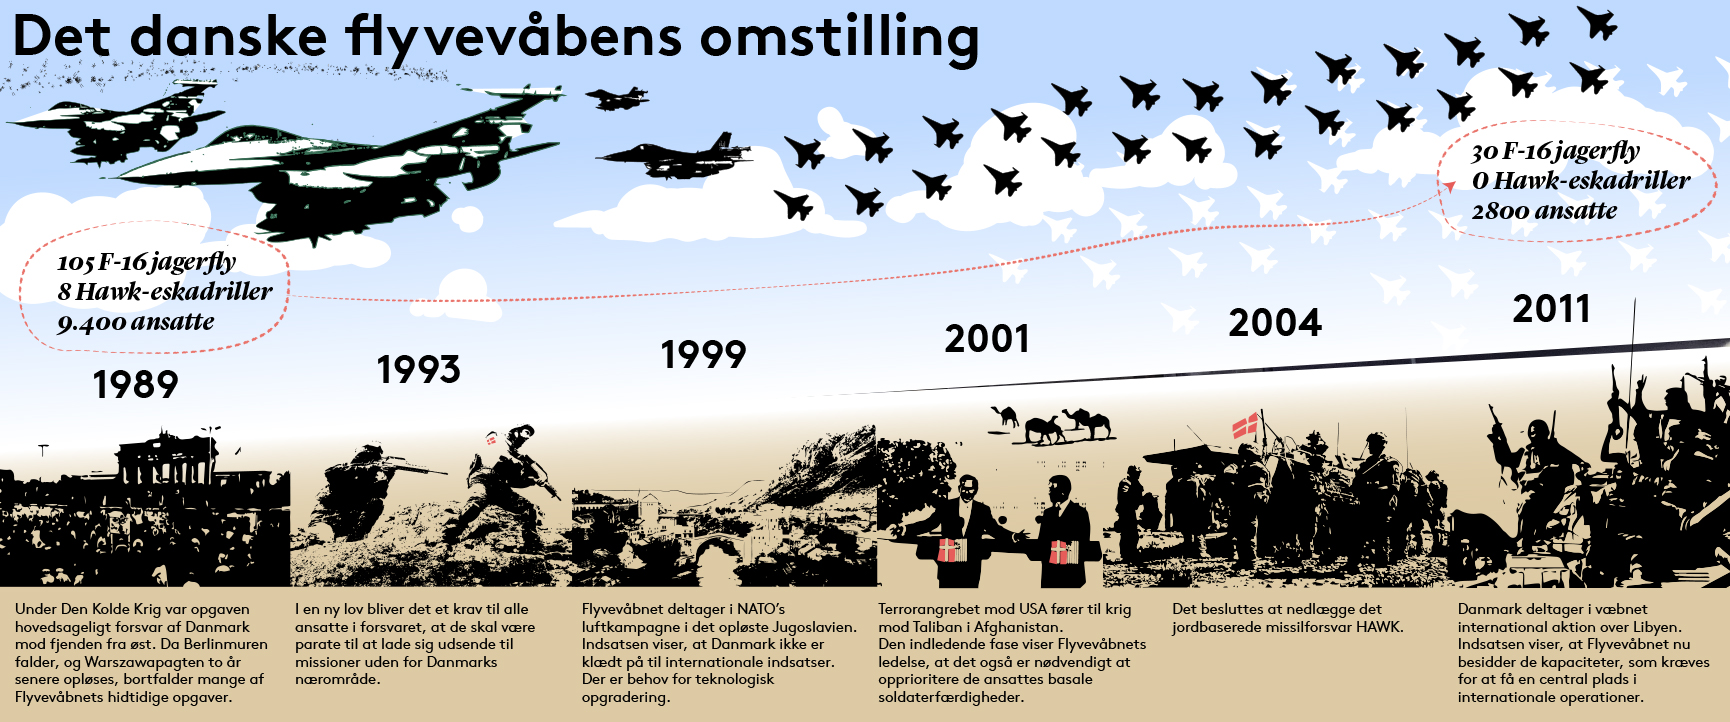 Billedet viser den historiske udvikling i det danske flyvevåbens omstilling